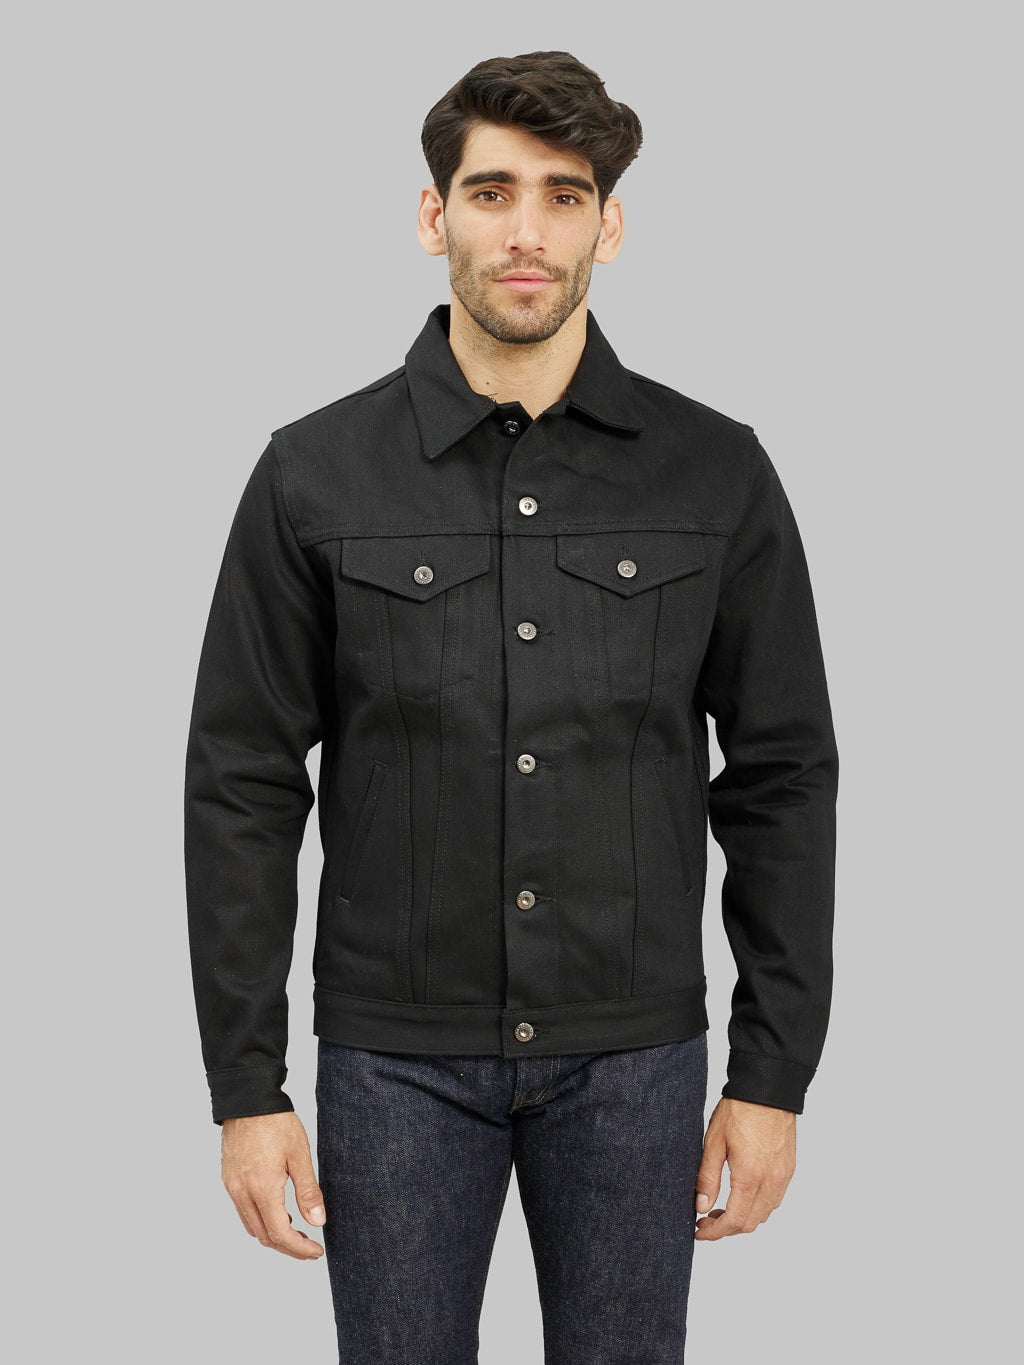 3sixteen type III denim jacket double black selvedge front fit